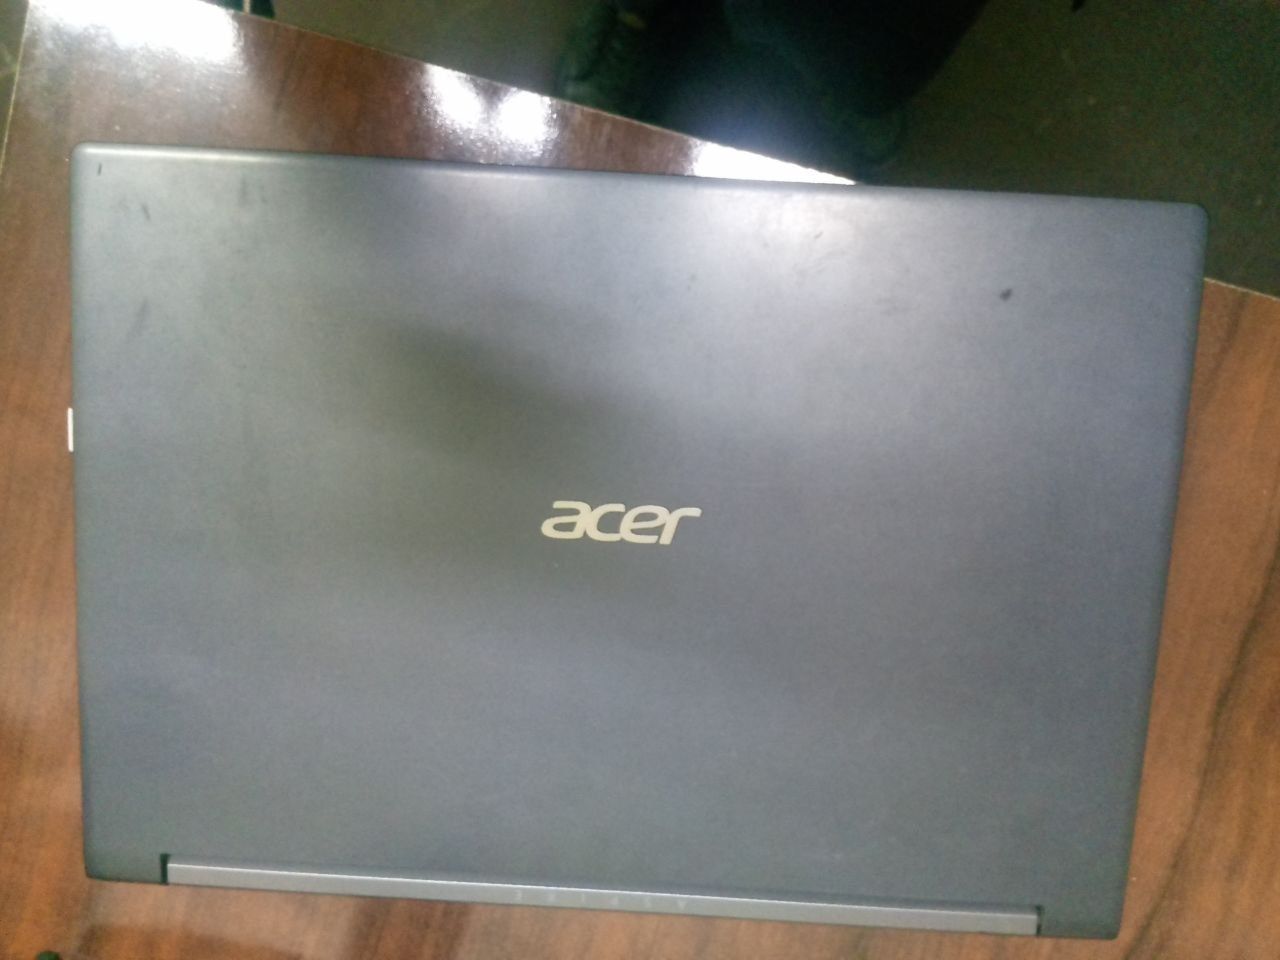 Acer 7 Noutbuk sotiladi